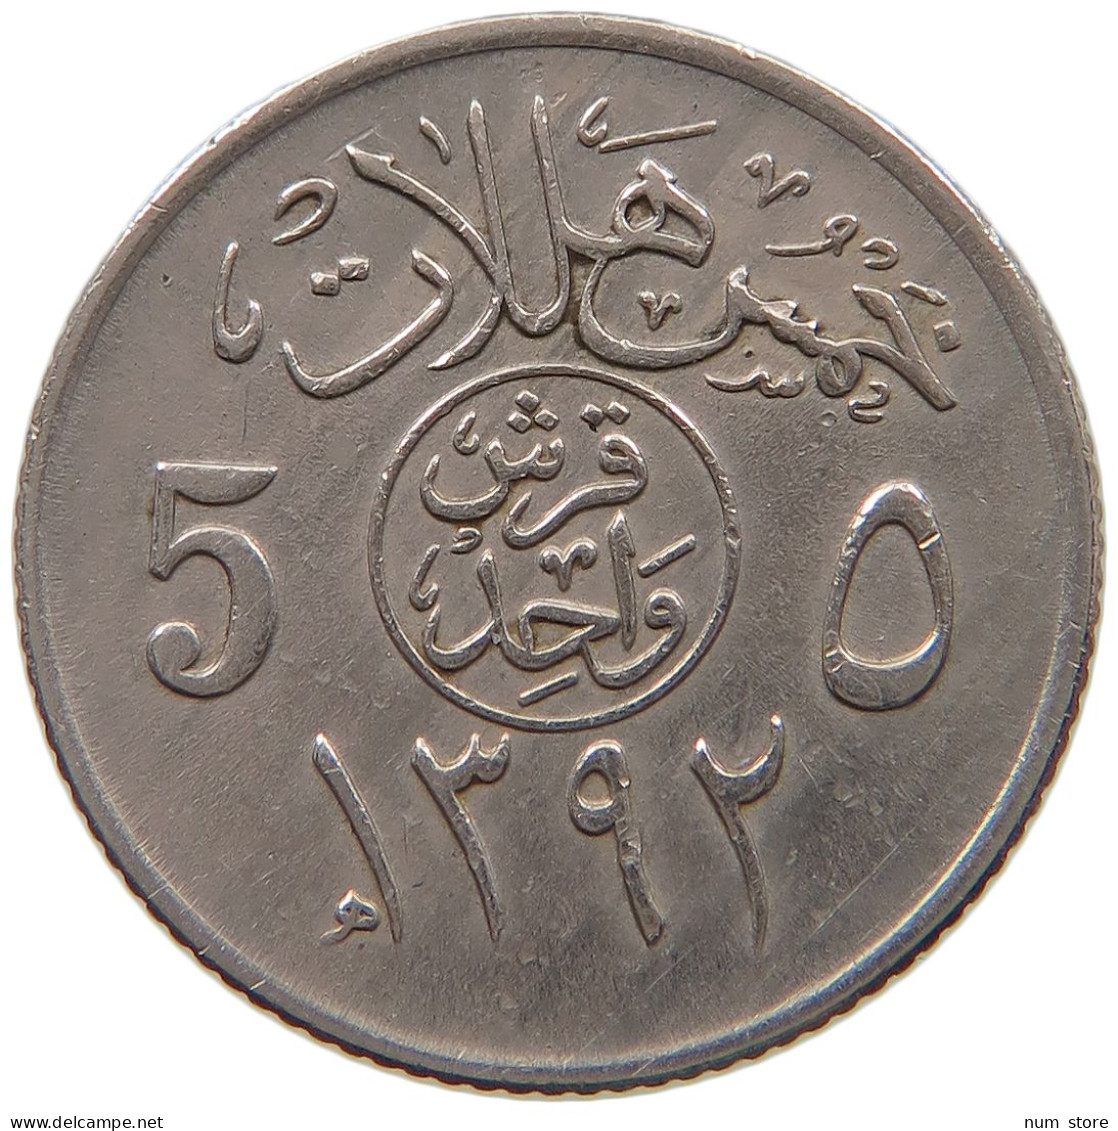 SAUDI ARABIA 5 HALALA 1392  #a050 0149 - Arabia Saudita